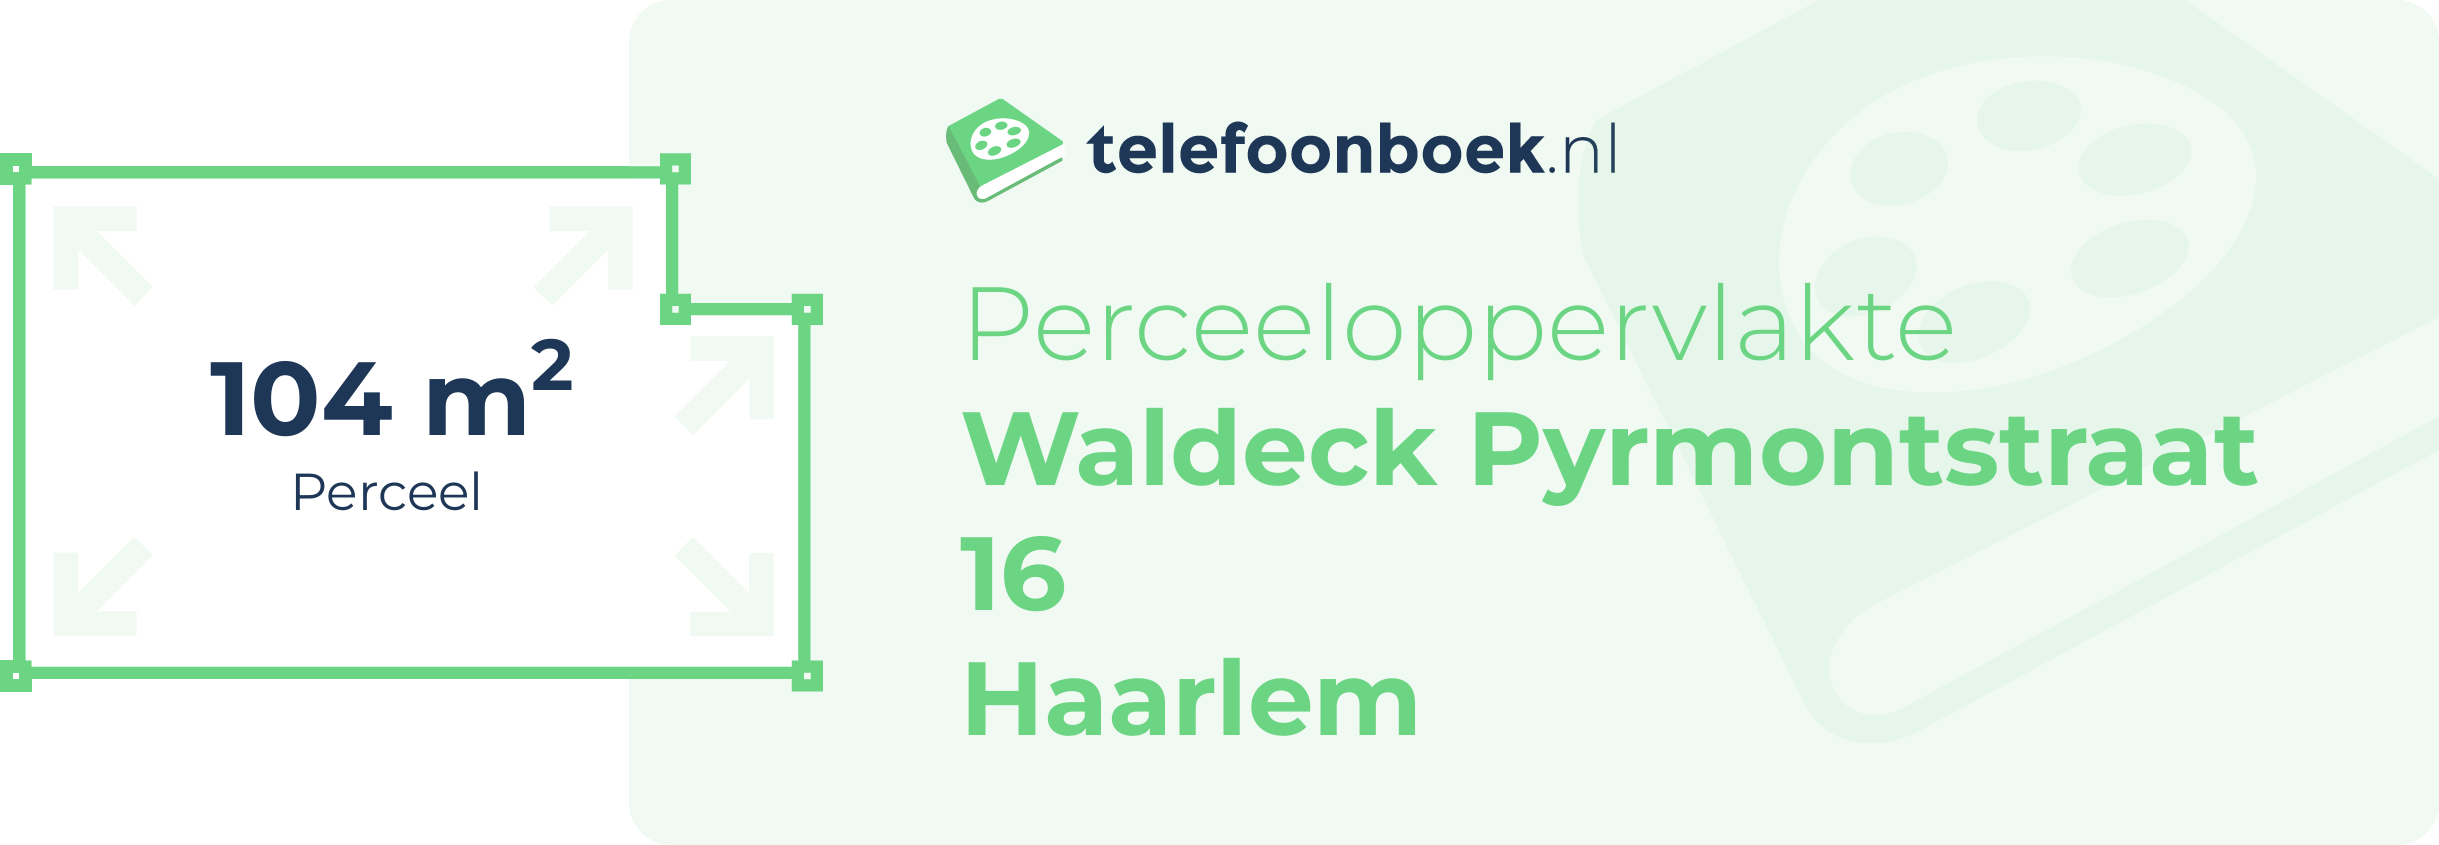 Perceeloppervlakte Waldeck Pyrmontstraat 16 Haarlem